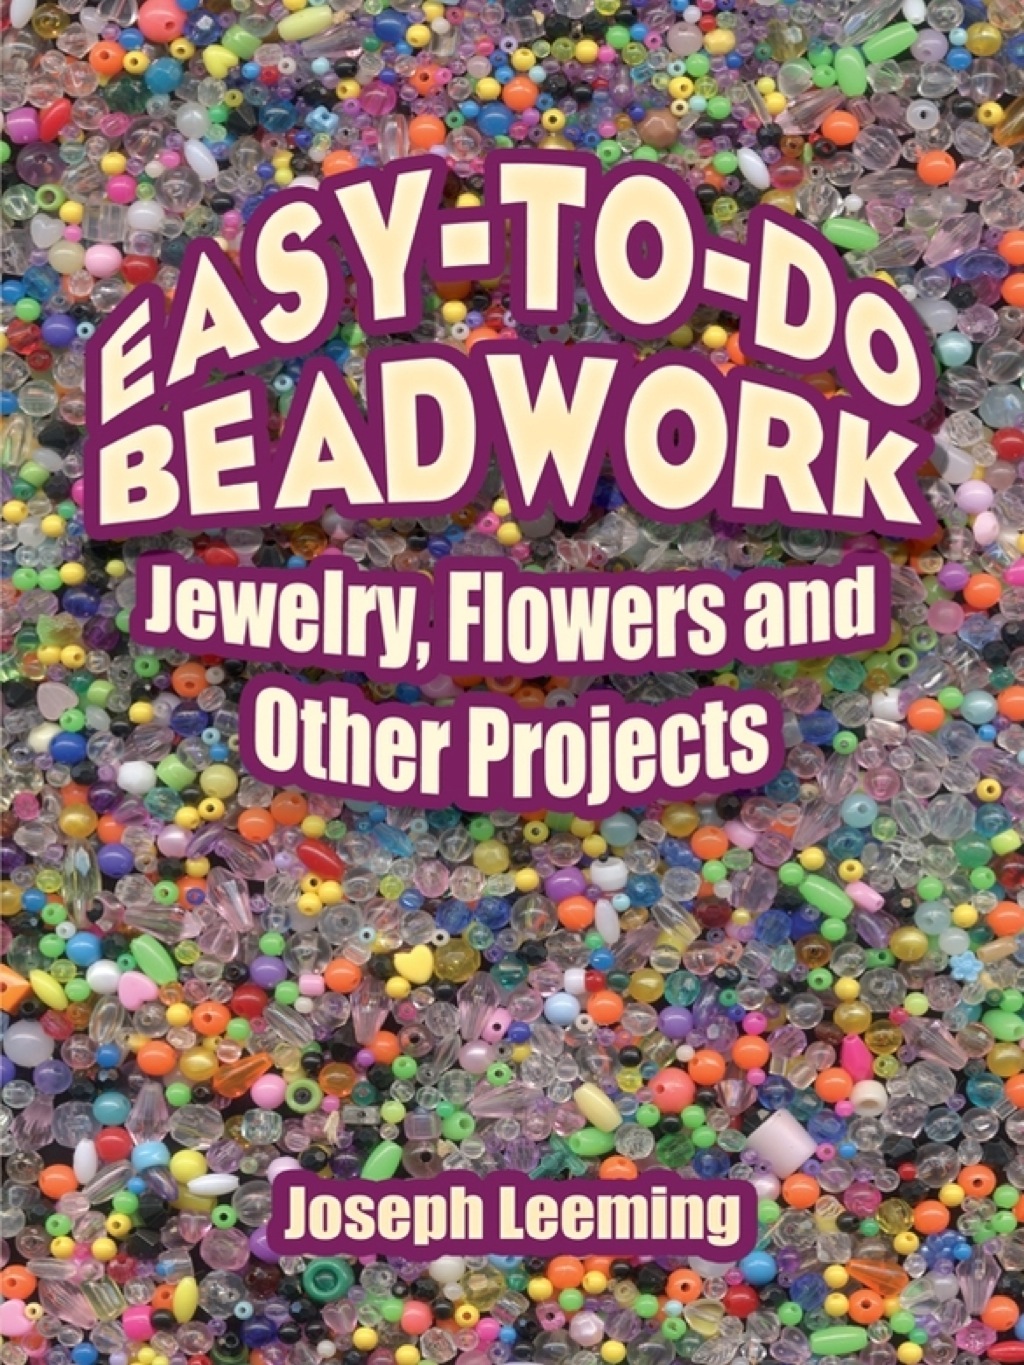 Easy-to-Do Beadwork (eBook) - Joseph Leeming,